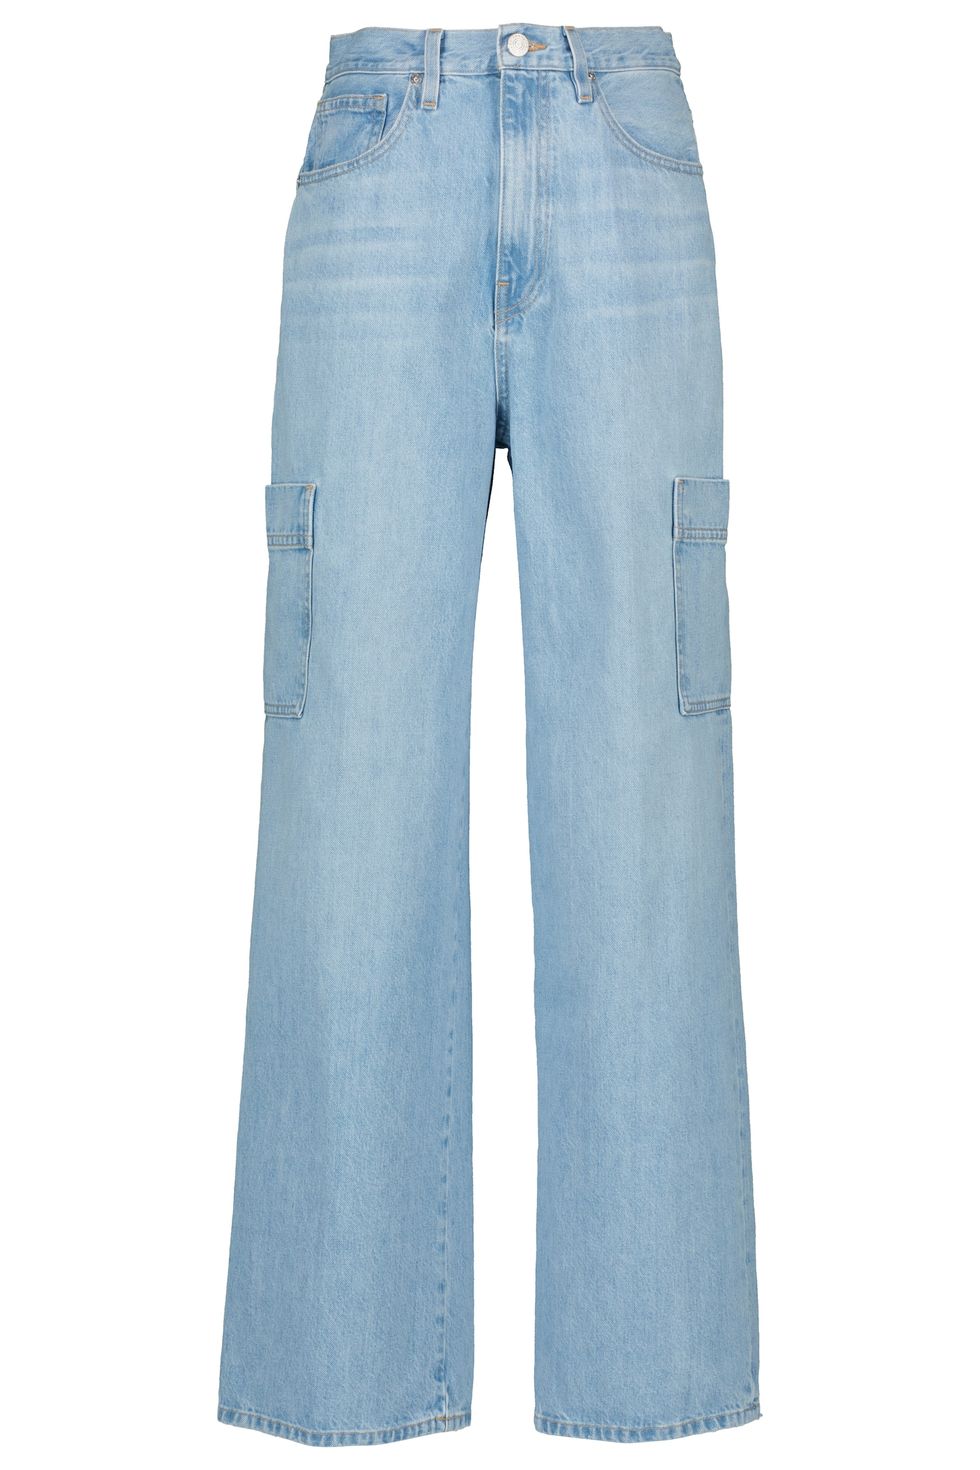 Best '90s Jeans for Spring - '90s-Inspired Denim Styles 2023